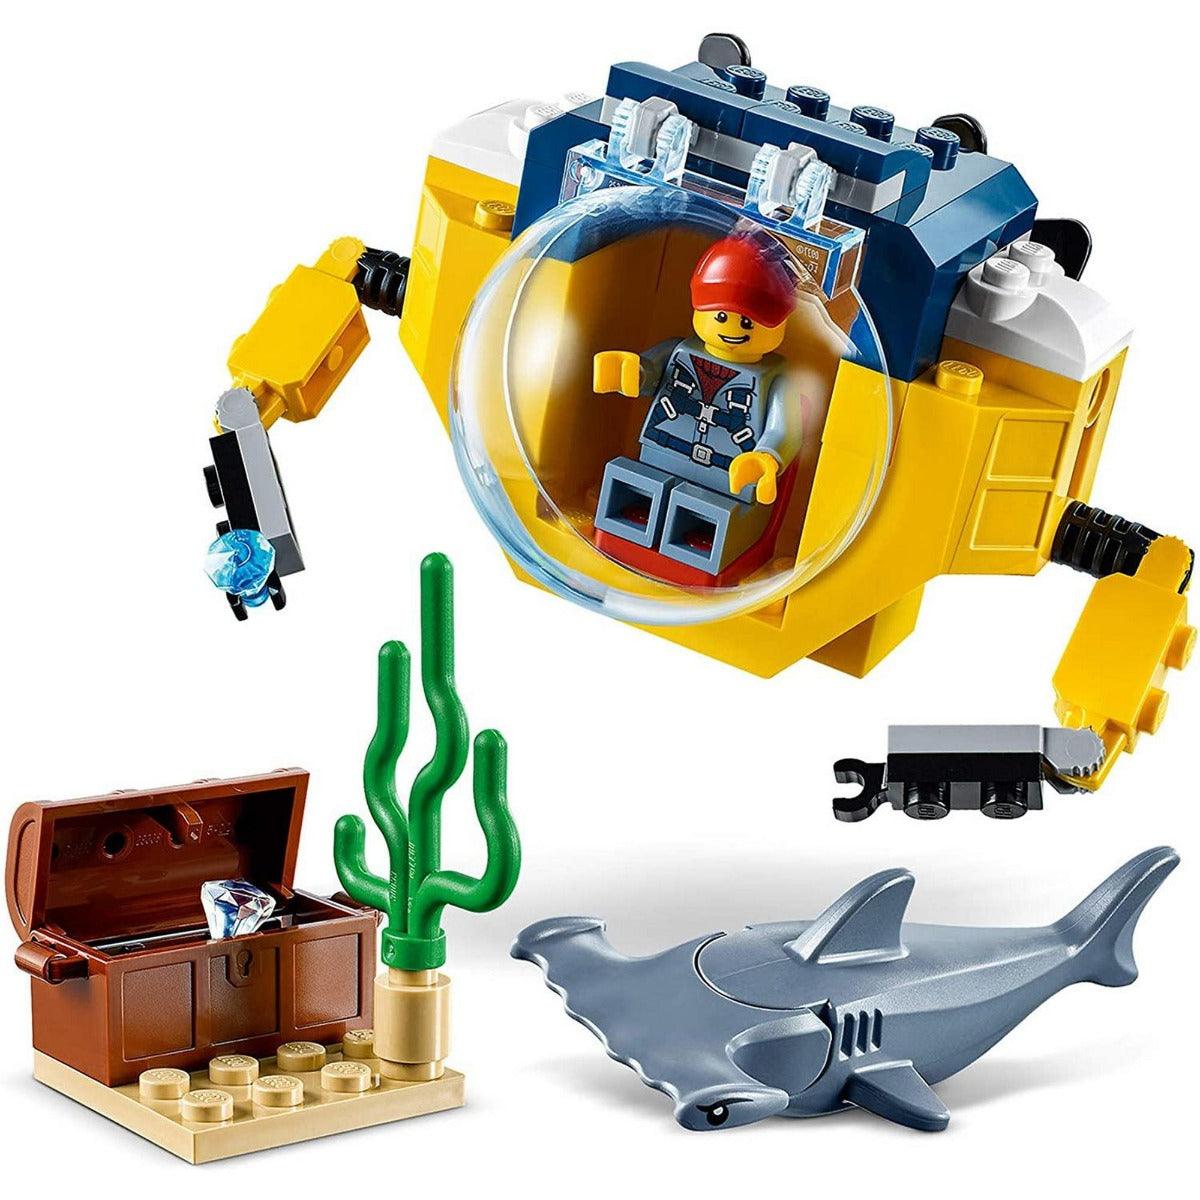 LEGO City Ocean Mini-Submarine